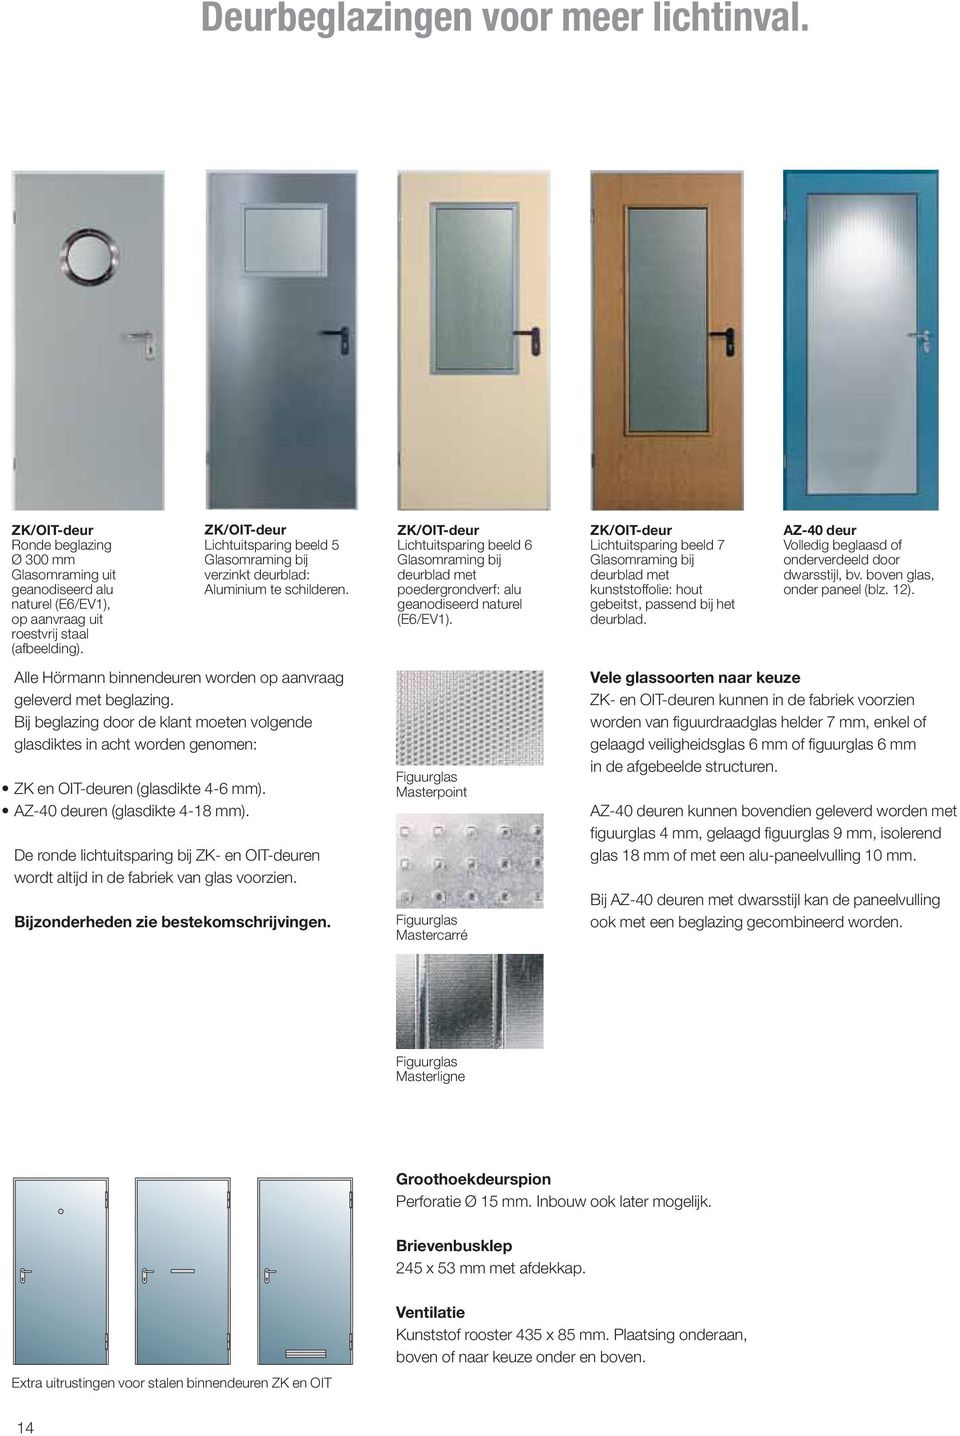 ZK/OIT-deur Lichtuitsparing beeld 6 Glasomraming bij deurblad met poedergrondverf: alu geanodiseerd naturel (E6/EV1).